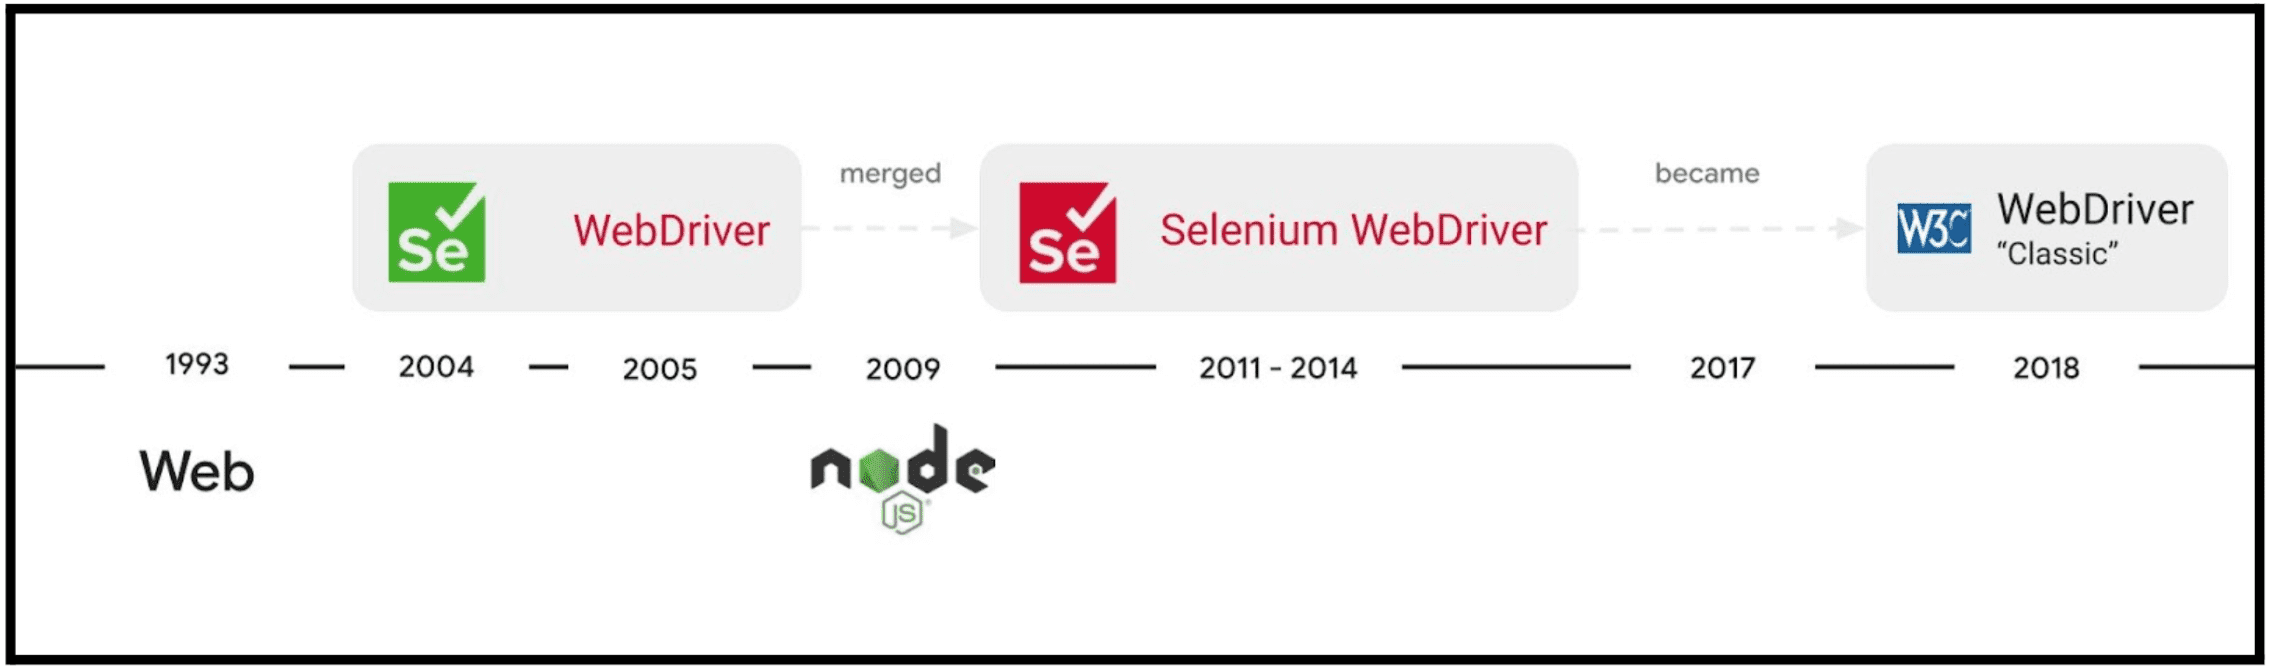 Selenium WebDriver 프로젝트의 발전